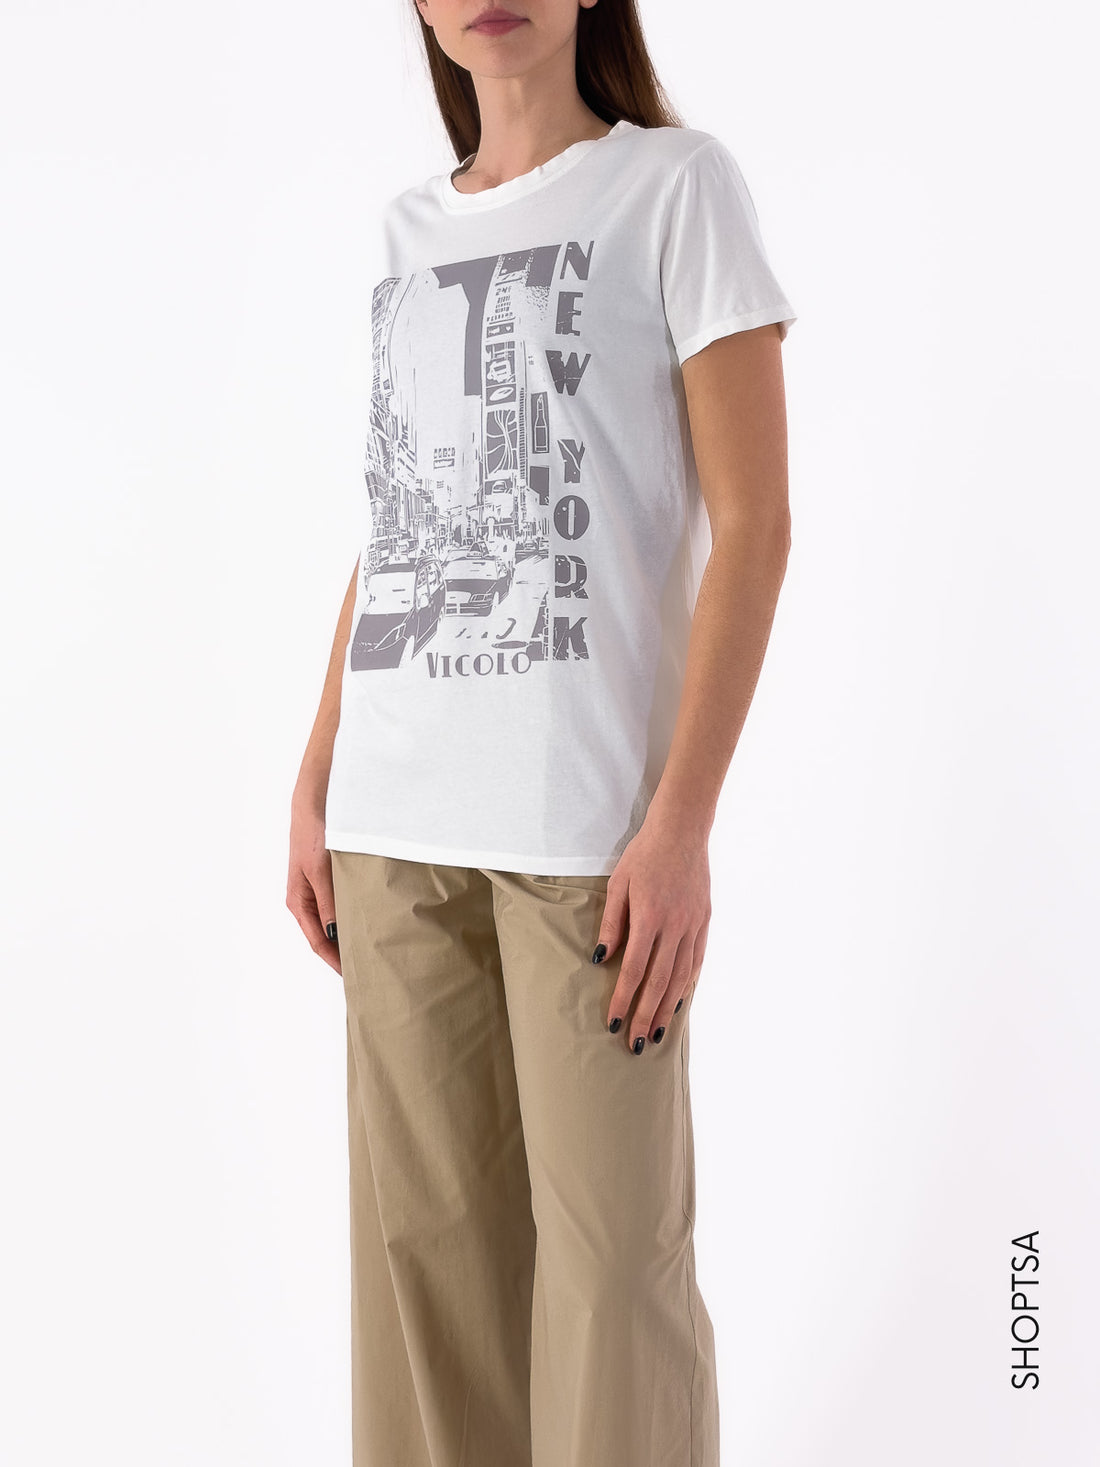 T-shirt cotone Rb0222 - ViCOLO